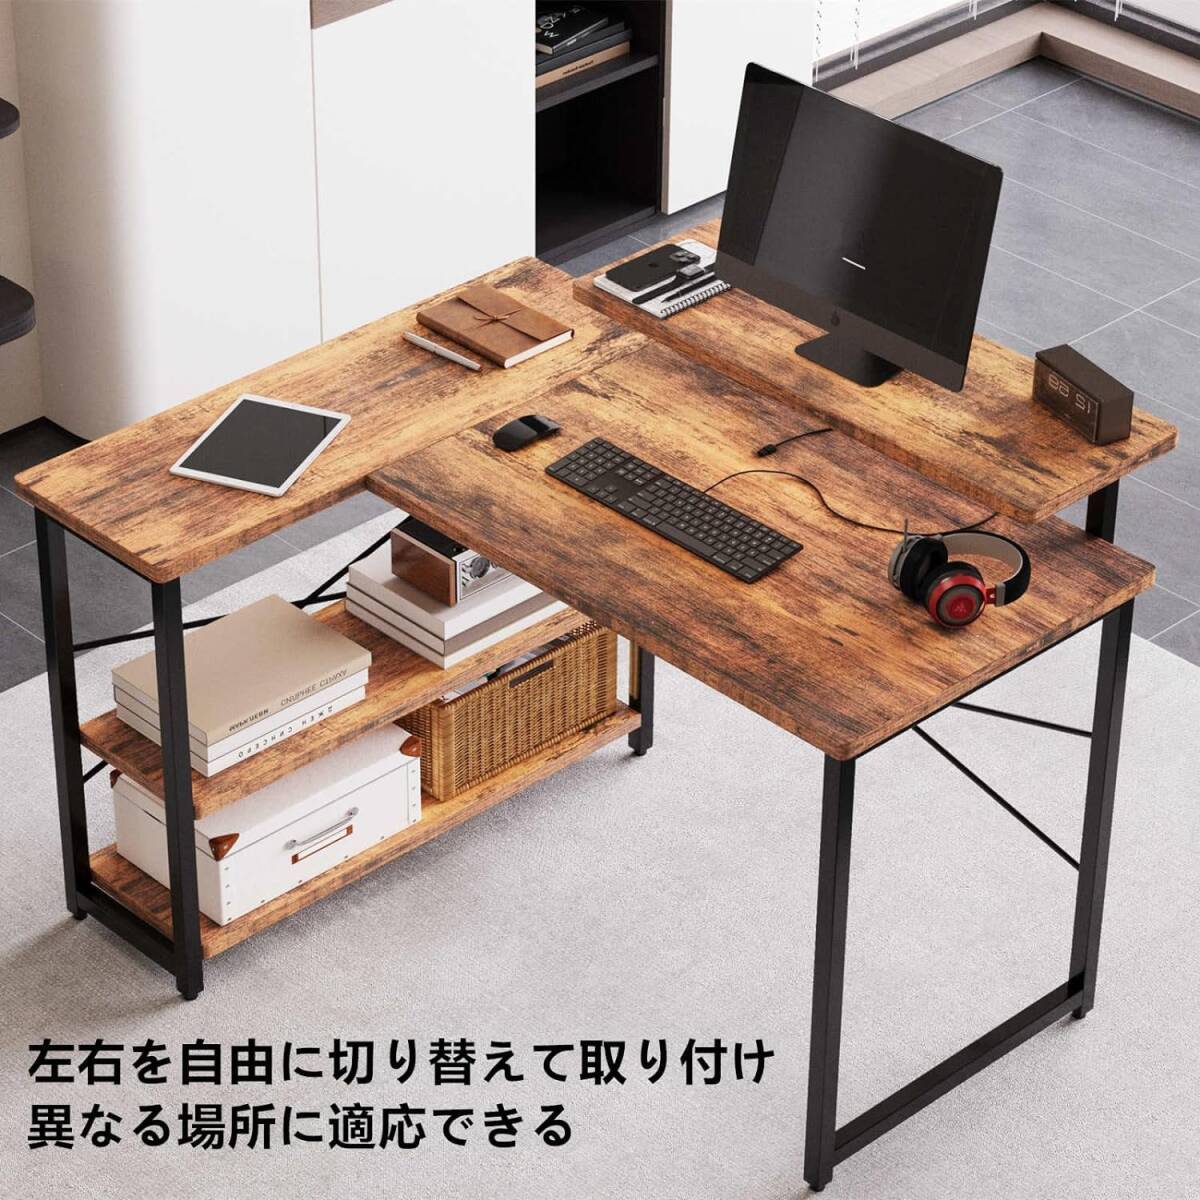 Embrace life L знак type компьютерный стол ge-ming стол под дерево ( новый товар нераспечатанный * не использовался )